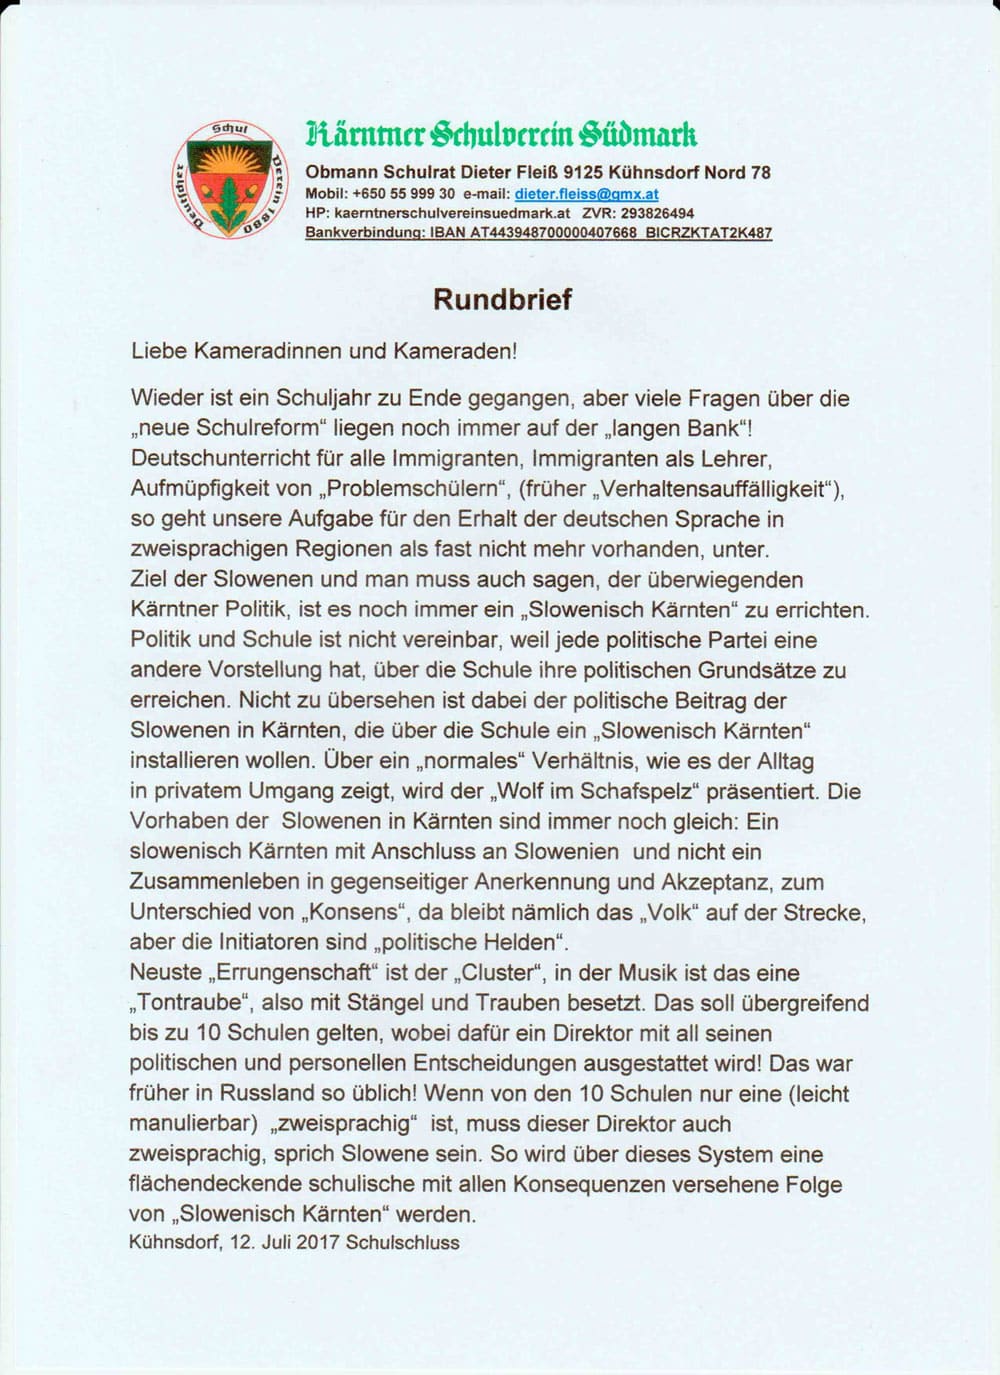 Rundbrief-Neue-Schulreform